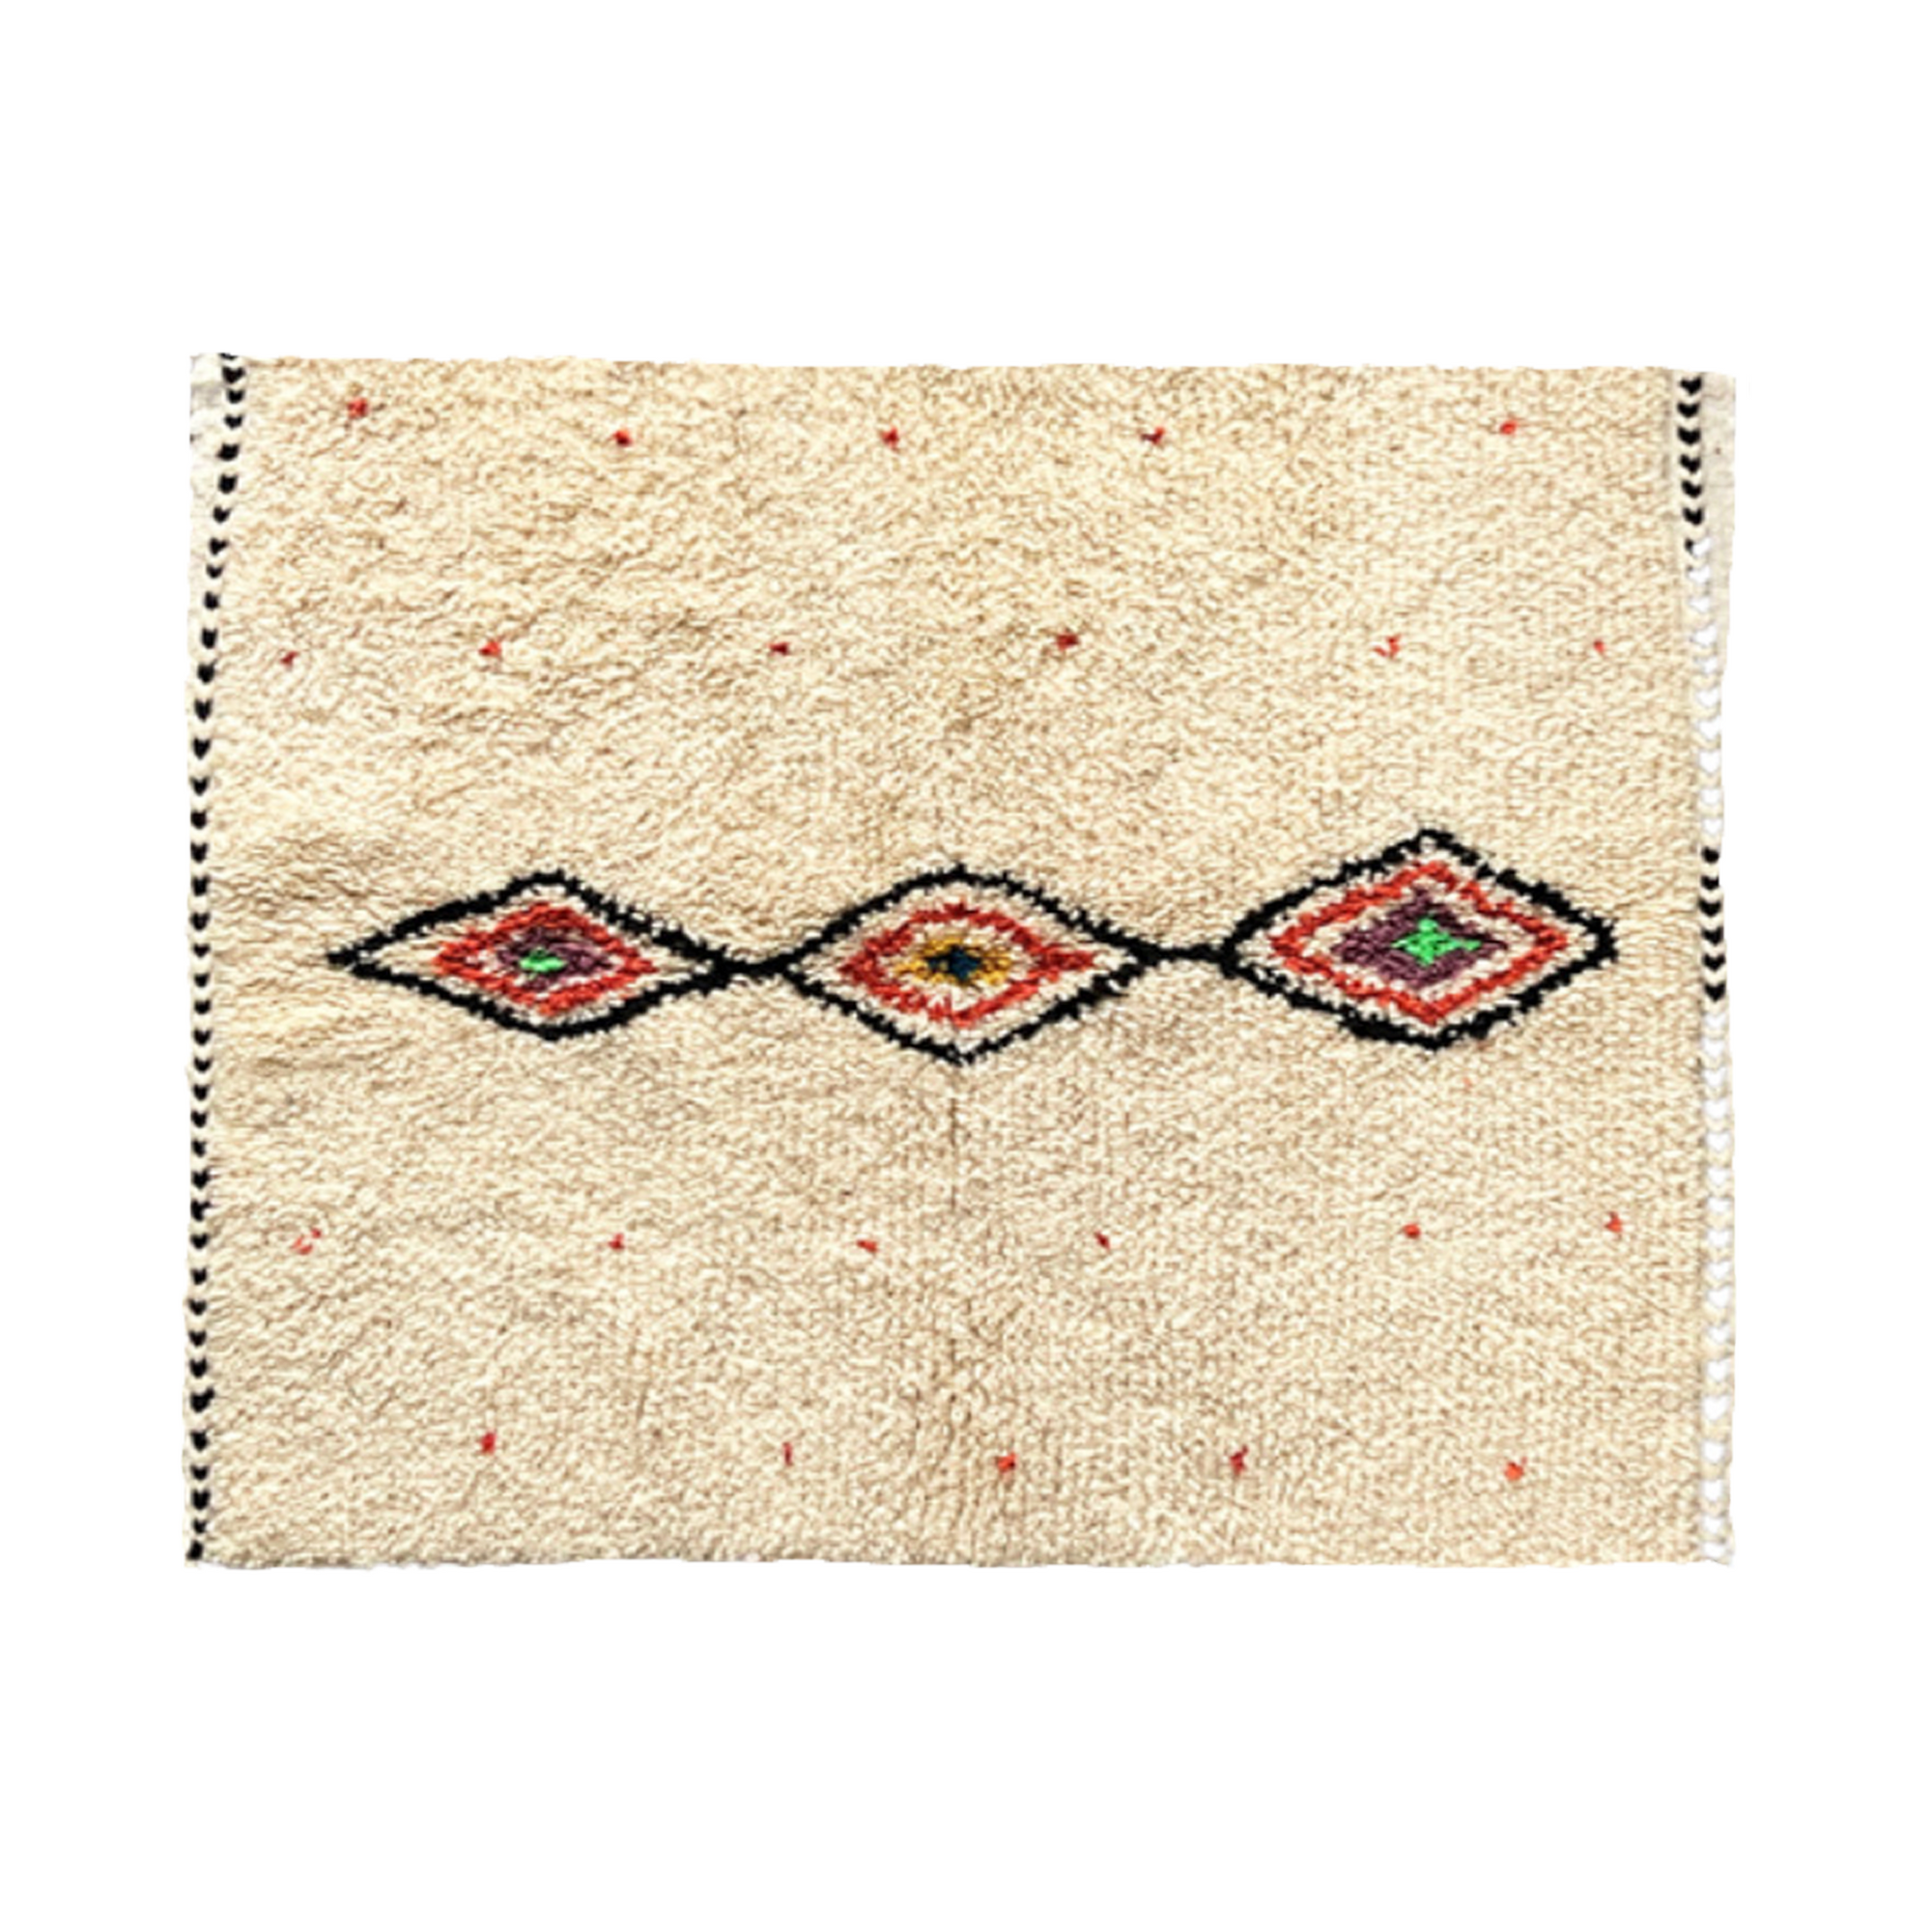 Mogli - Design - Knotted Weave